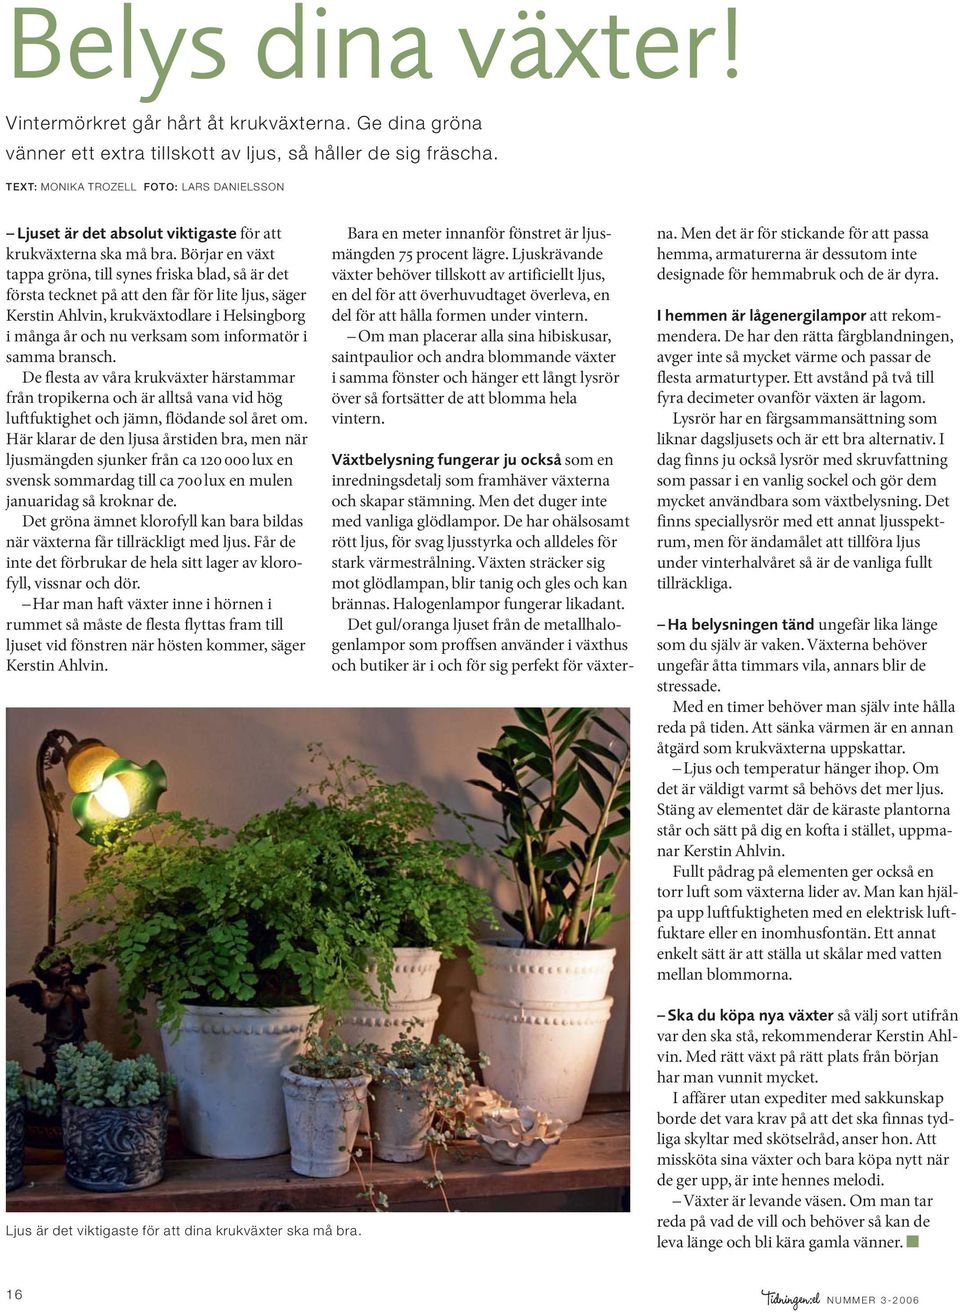 Börjar en växt tappa gröna, till synes friska blad, så är det första tecknet på att den får för lite ljus, säger Kerstin Ahlvin, krukväxtodlare i Helsingborg i många år och nu verksam som informatör